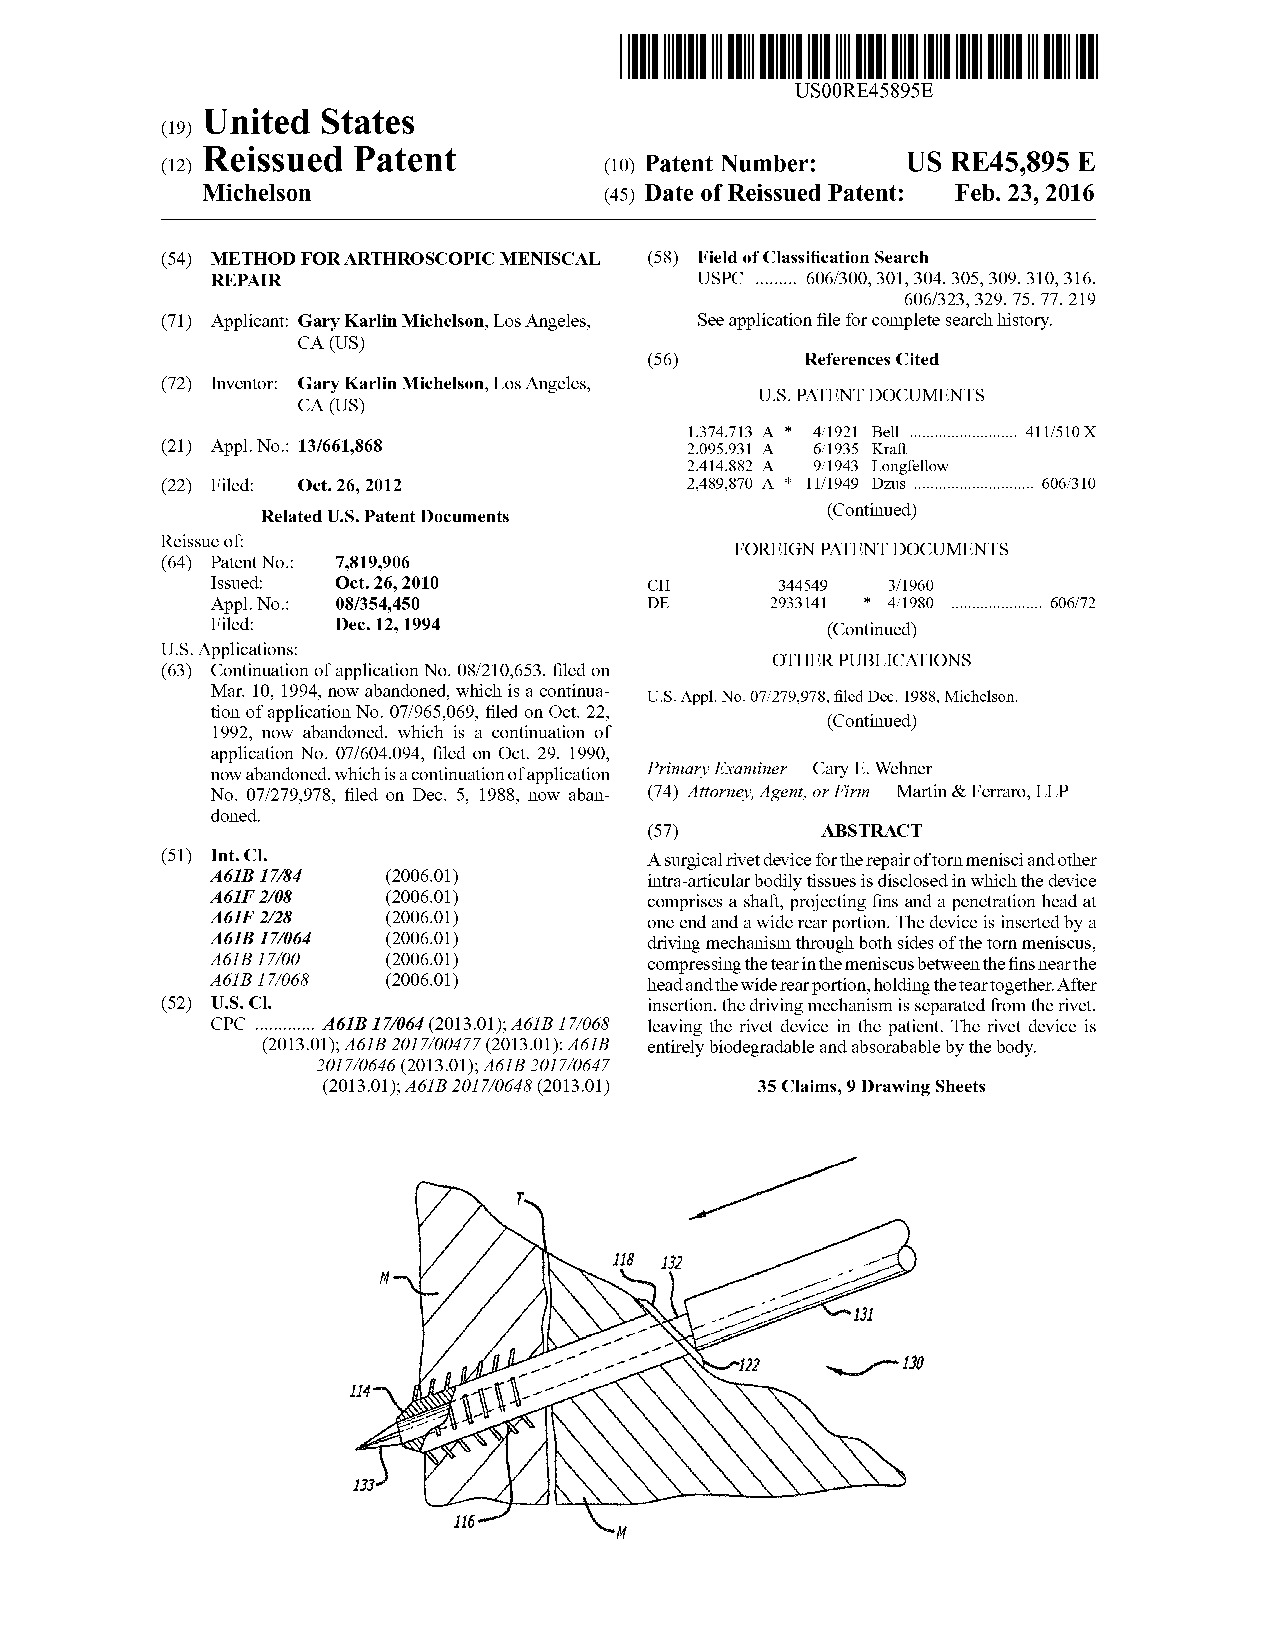 Method for arthroscopic meniscal repair - Patent RE45,895